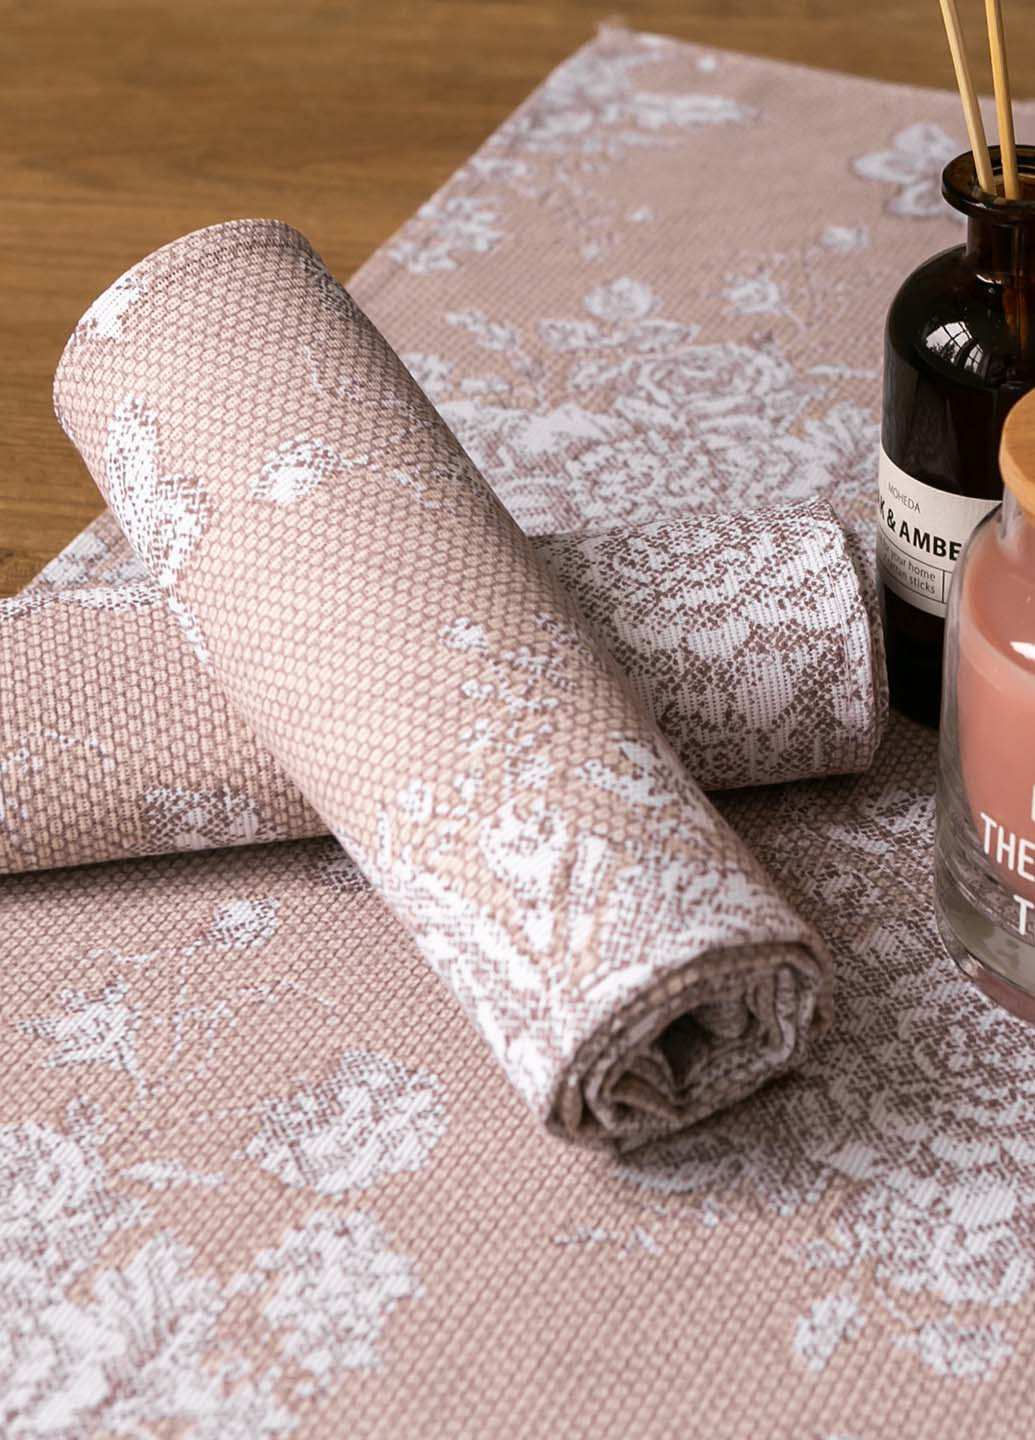 Homedec полотенце "шантильи бежевая" 75х40 см. цветочный бежевый производство - Украина